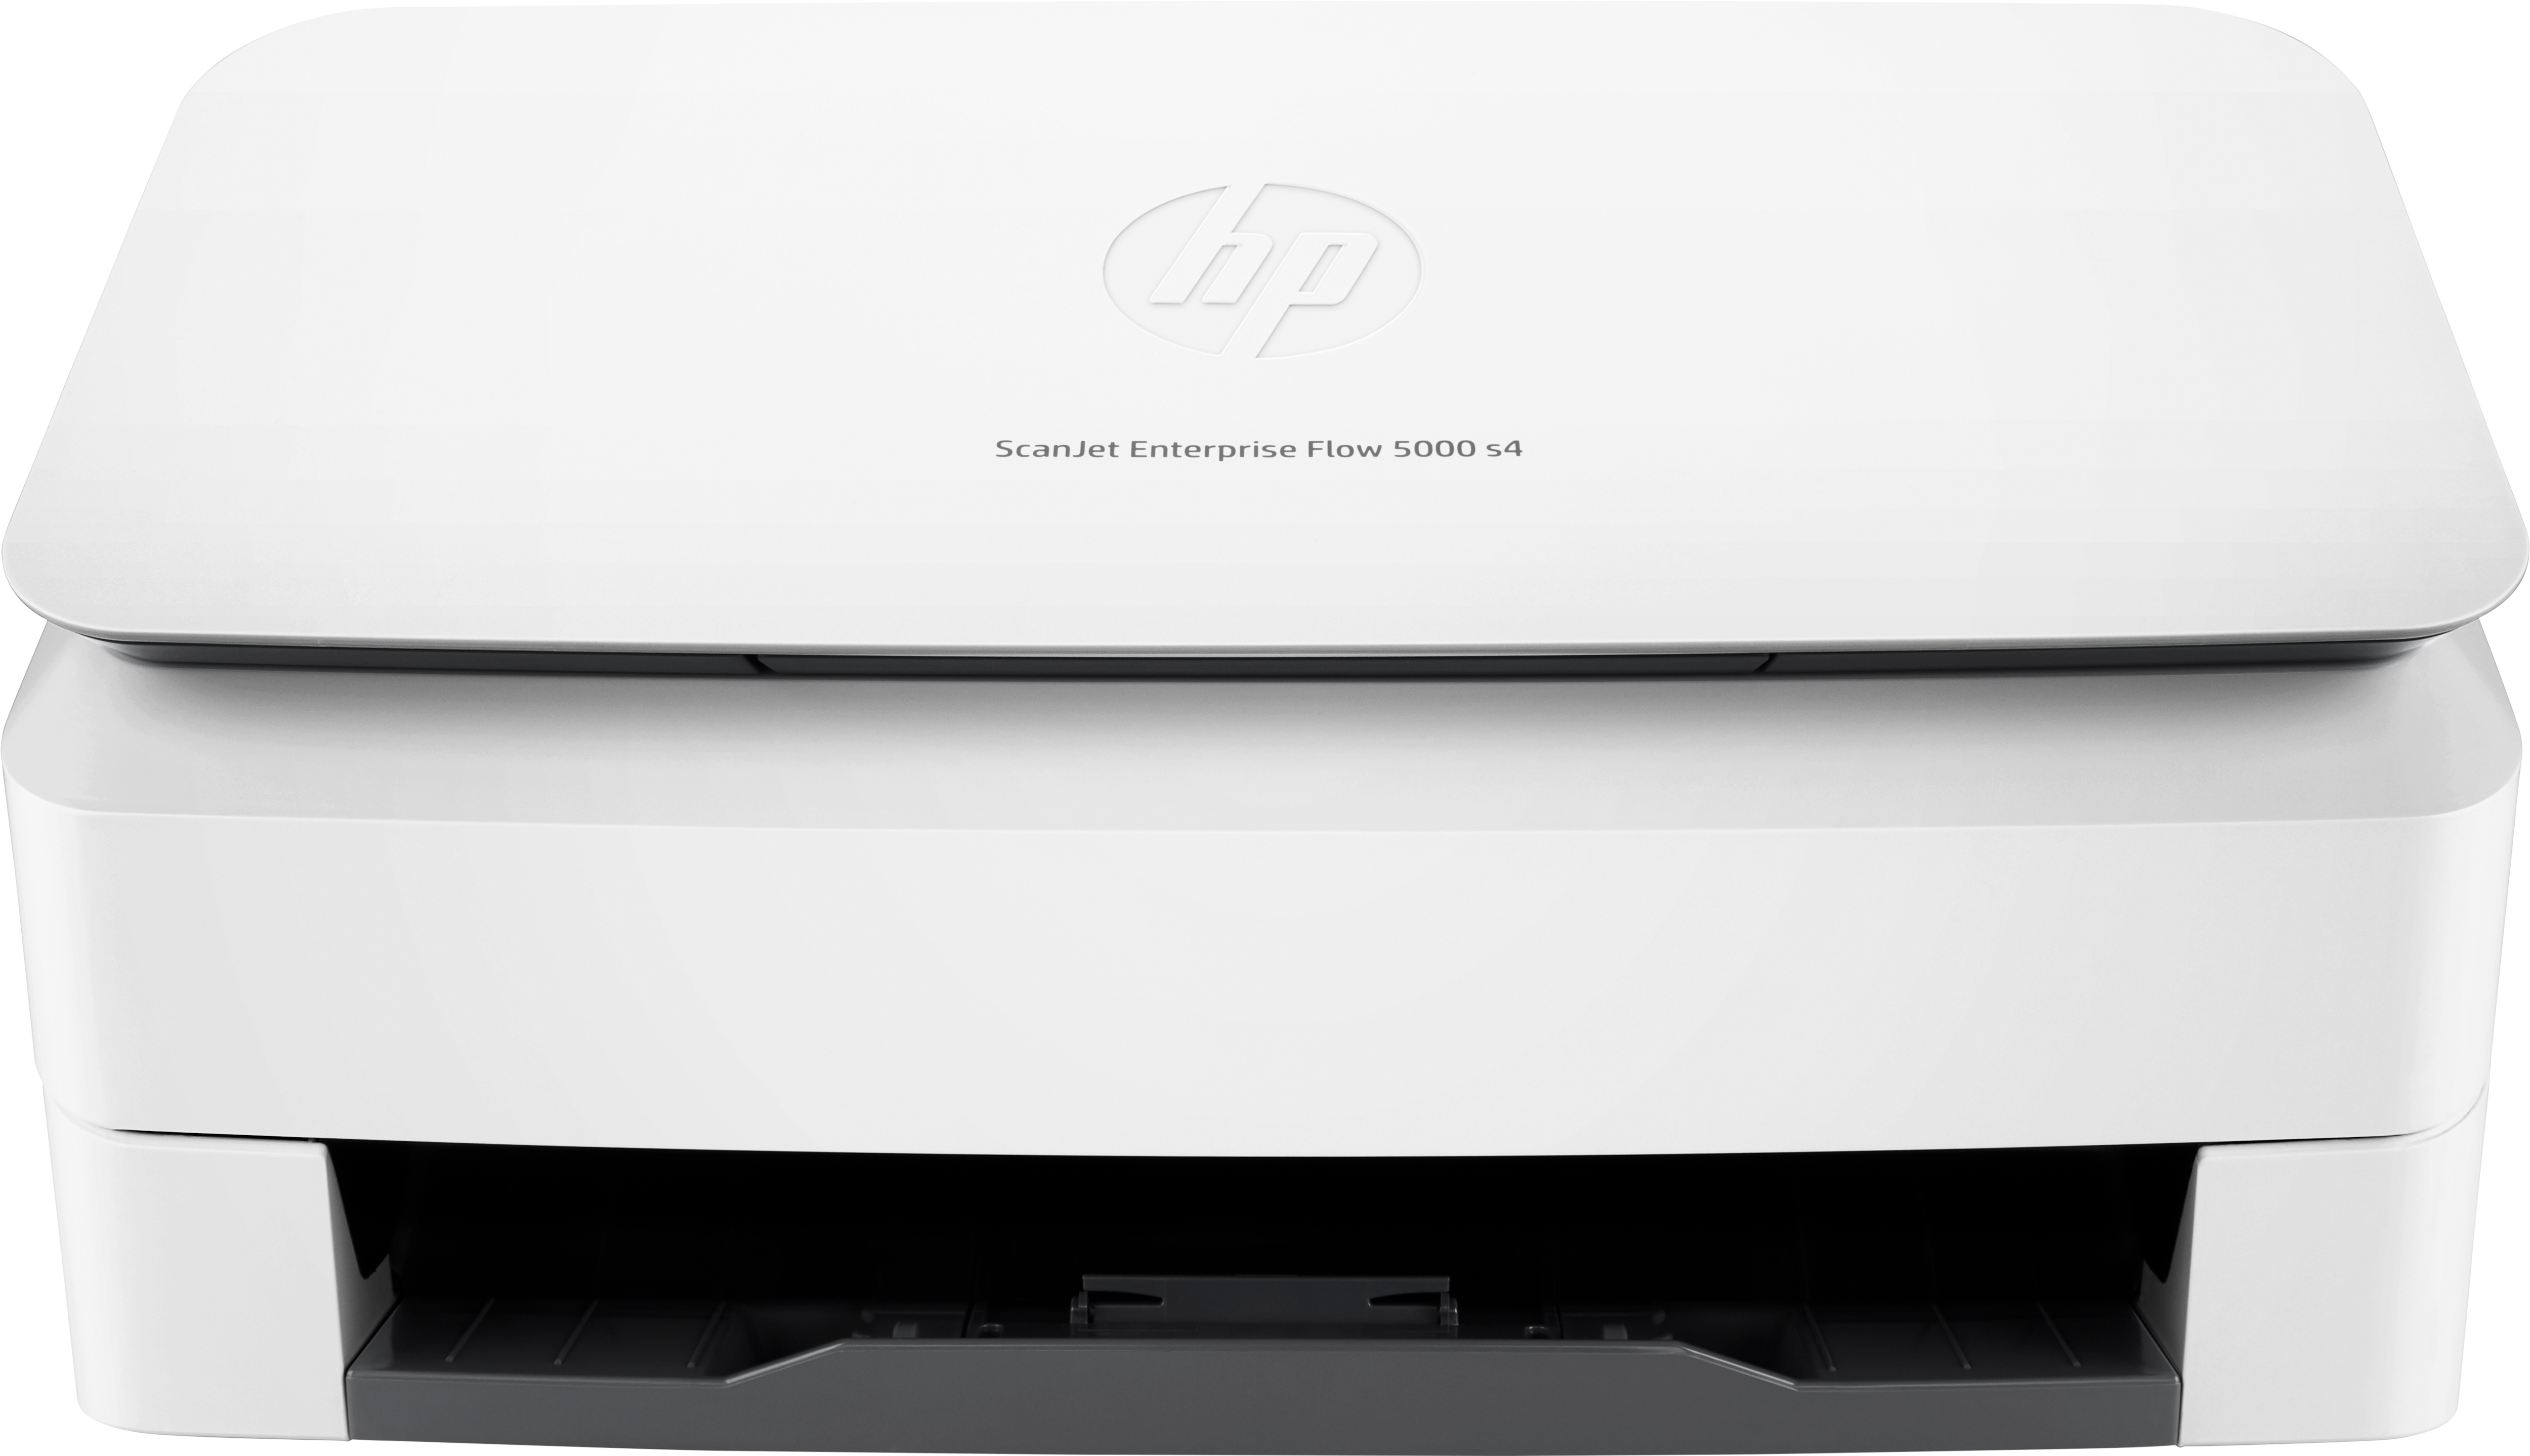 Escaner Hp Enterprise Flow 5000 S4 Duplex Usb 3.0 Adf 6000 Pag L2755A